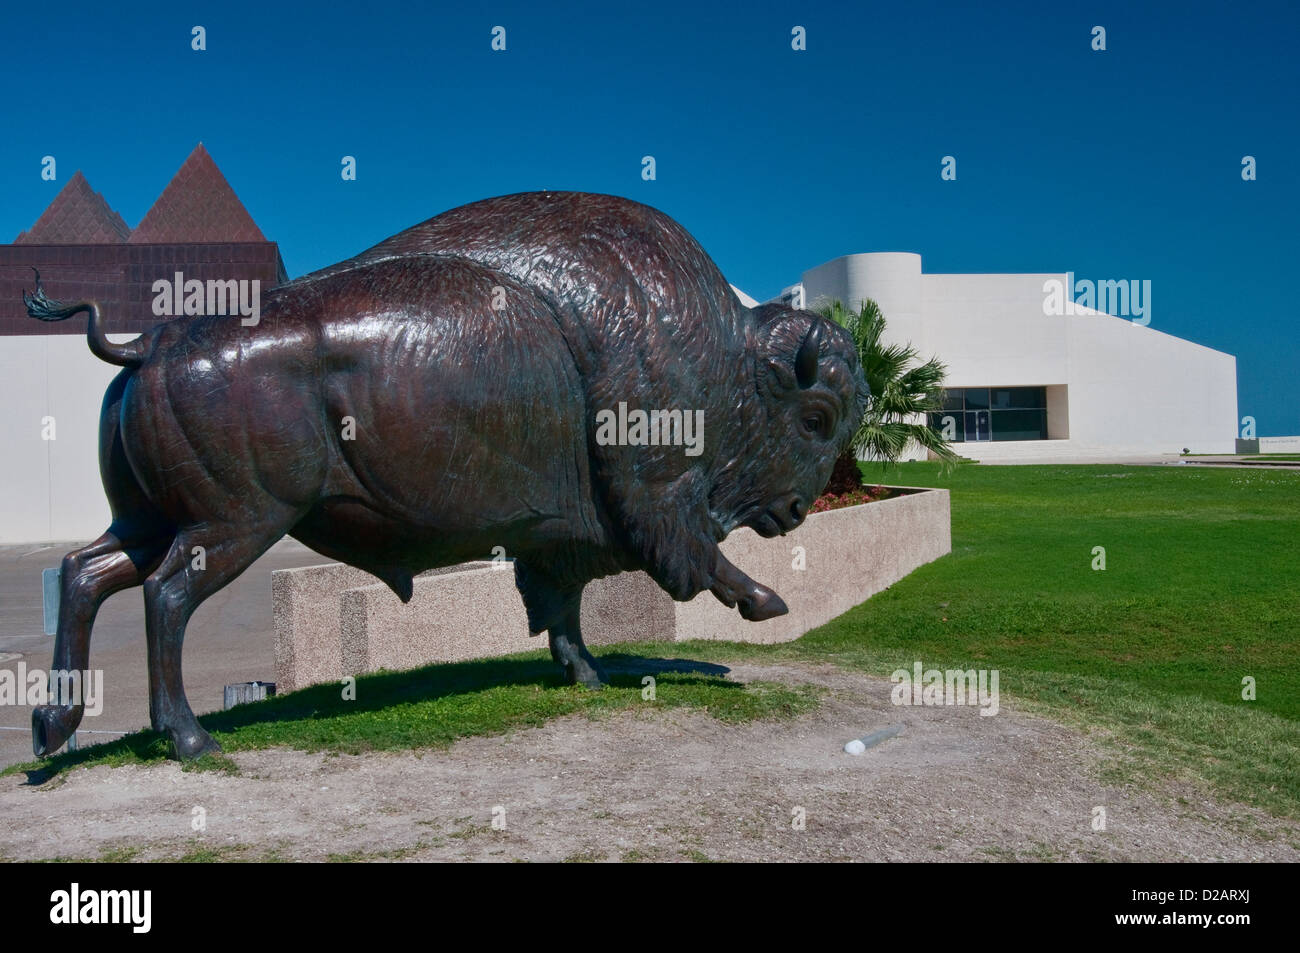 Esecuzione di bisonti, scultura in bronzo di kent ulberg, museo d'arte del Texas del sud, Corpus Christi, costa del golfo, texas, Stati Uniti d'America Foto Stock